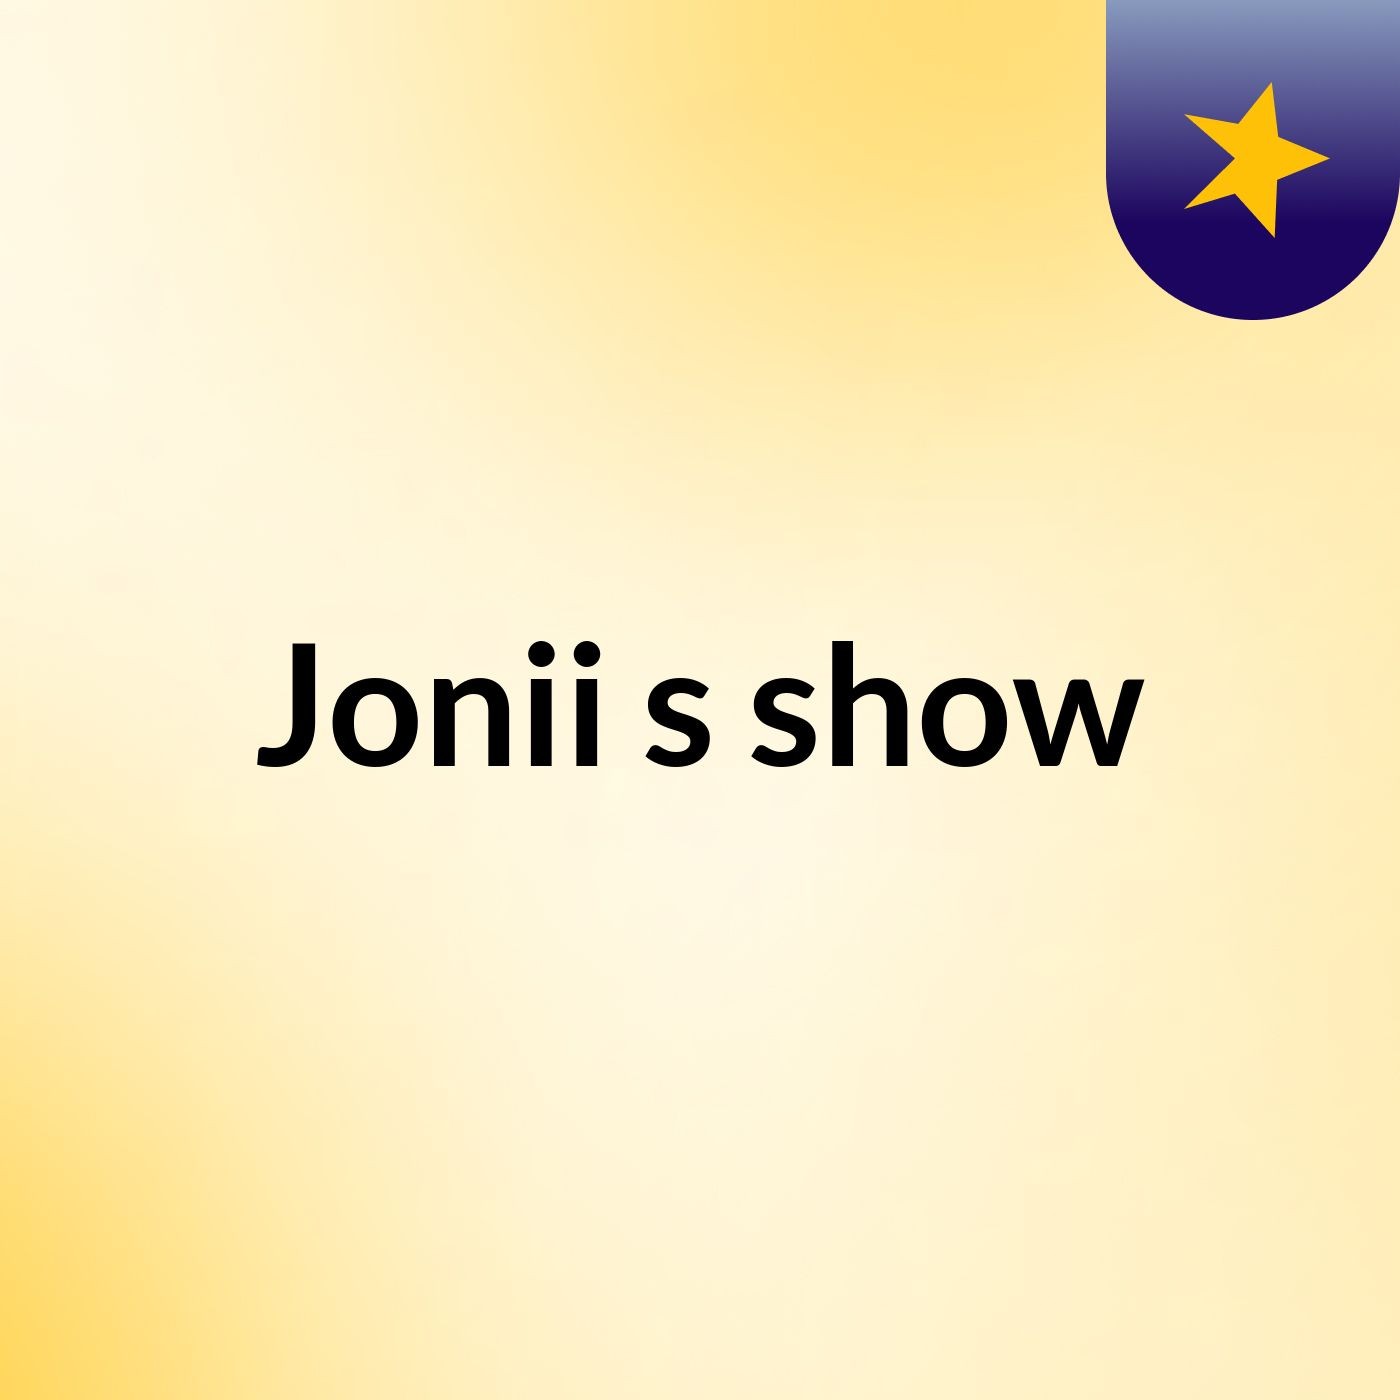 Jonii's show